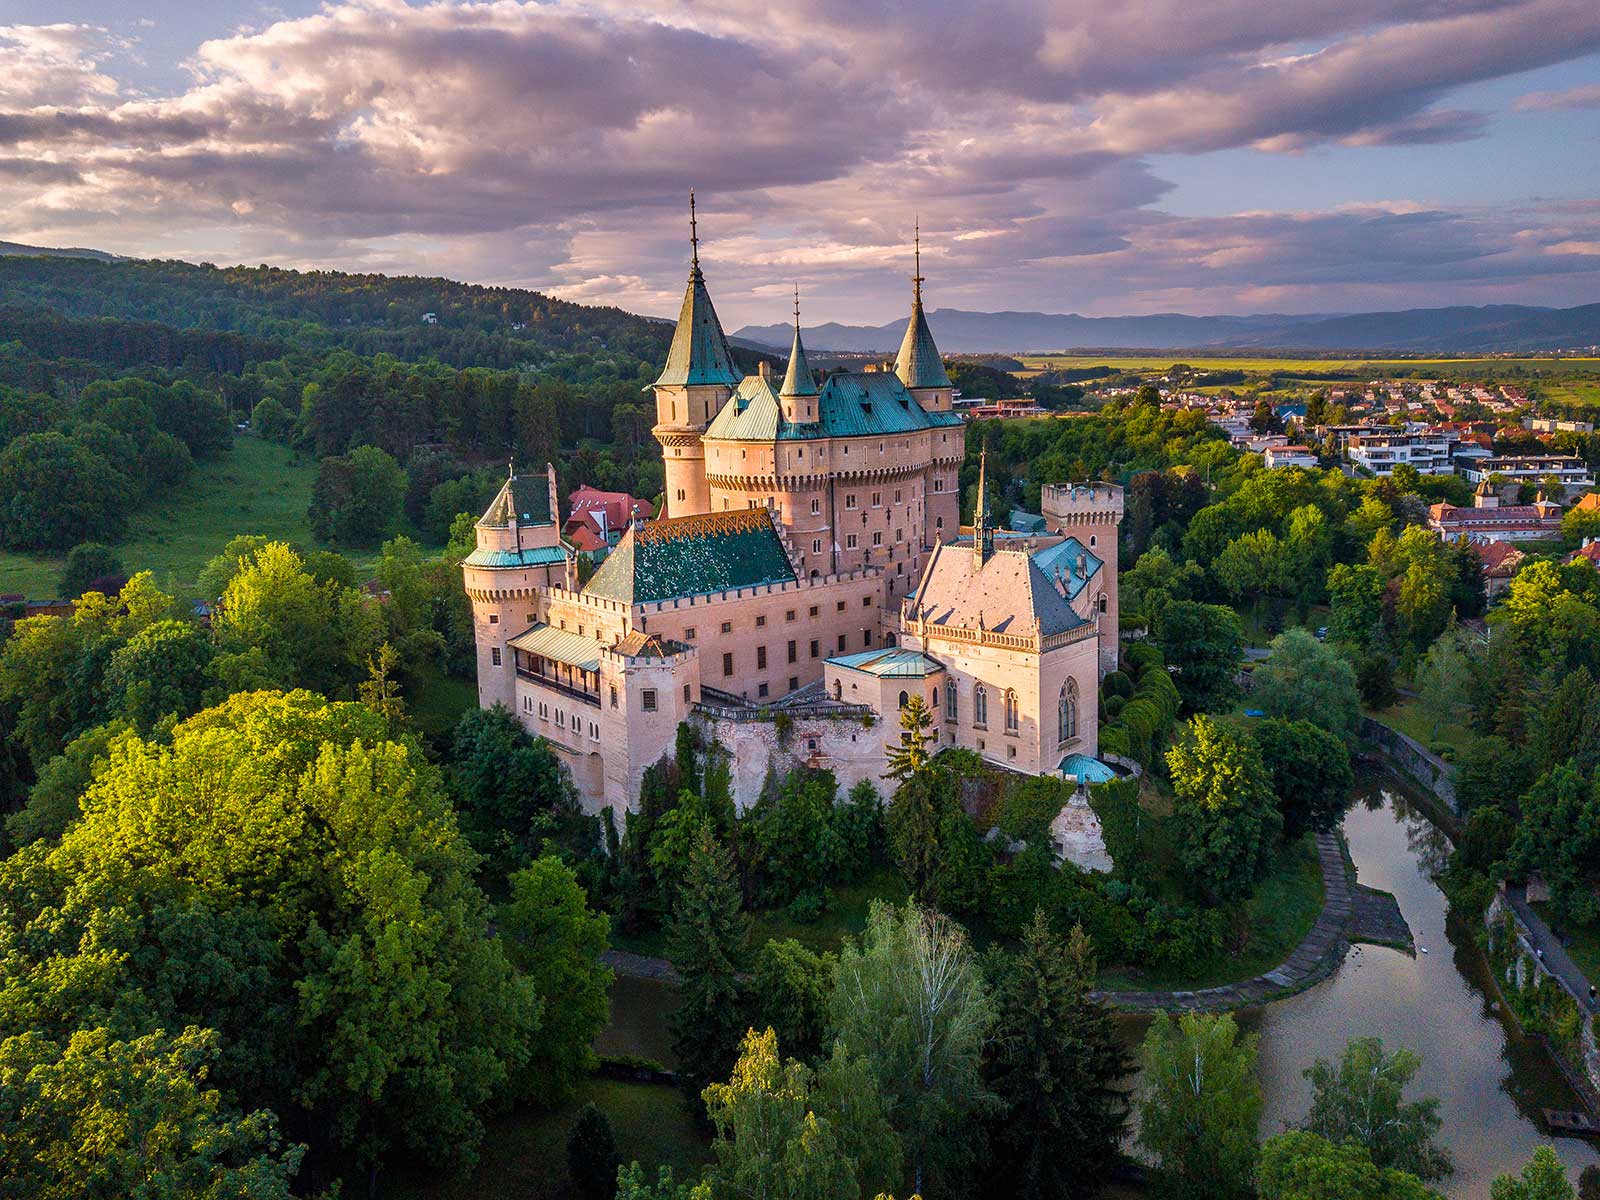 Bojnice Castle in Bojnice, Slovakia